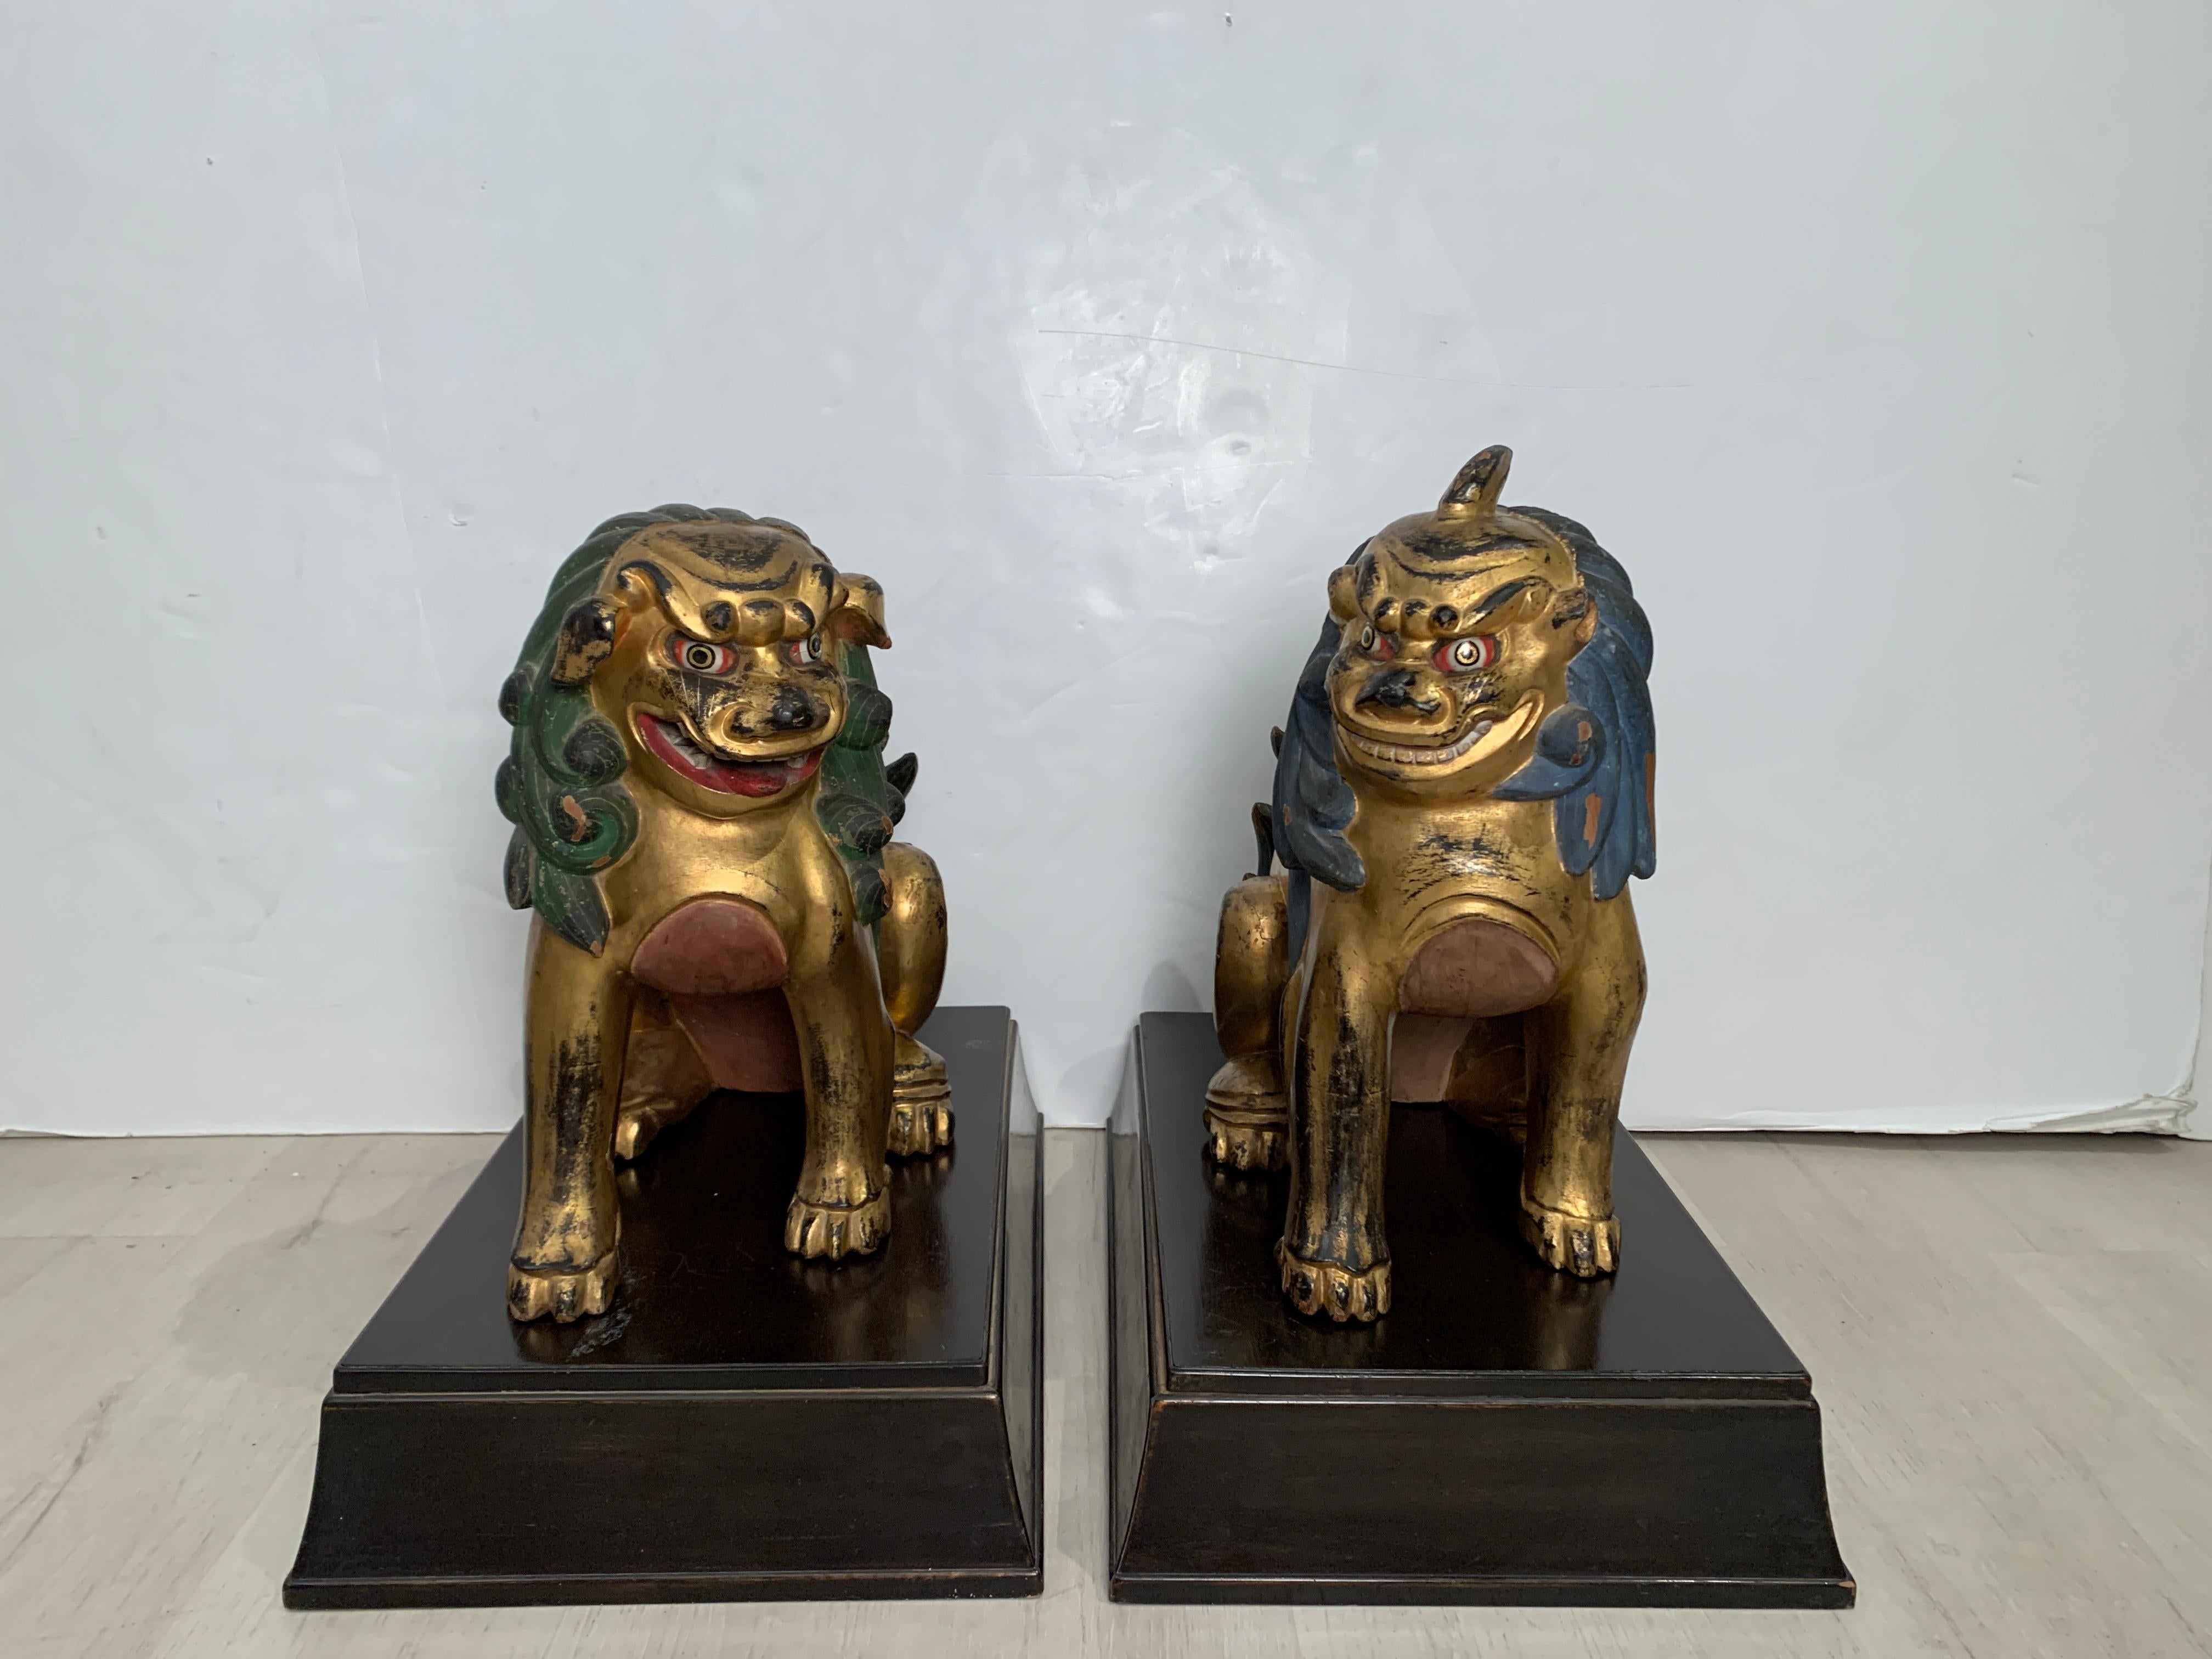 Charmante et espiègle paire de komainu japonais sculptés, dorés et peints, souvent confondus avec des chiens ou des lions foo, période Showa, années 1920, Japon. 

Les deux komainu, ou lions gardiens, sont représentés assis sur leurs pattes, la tête